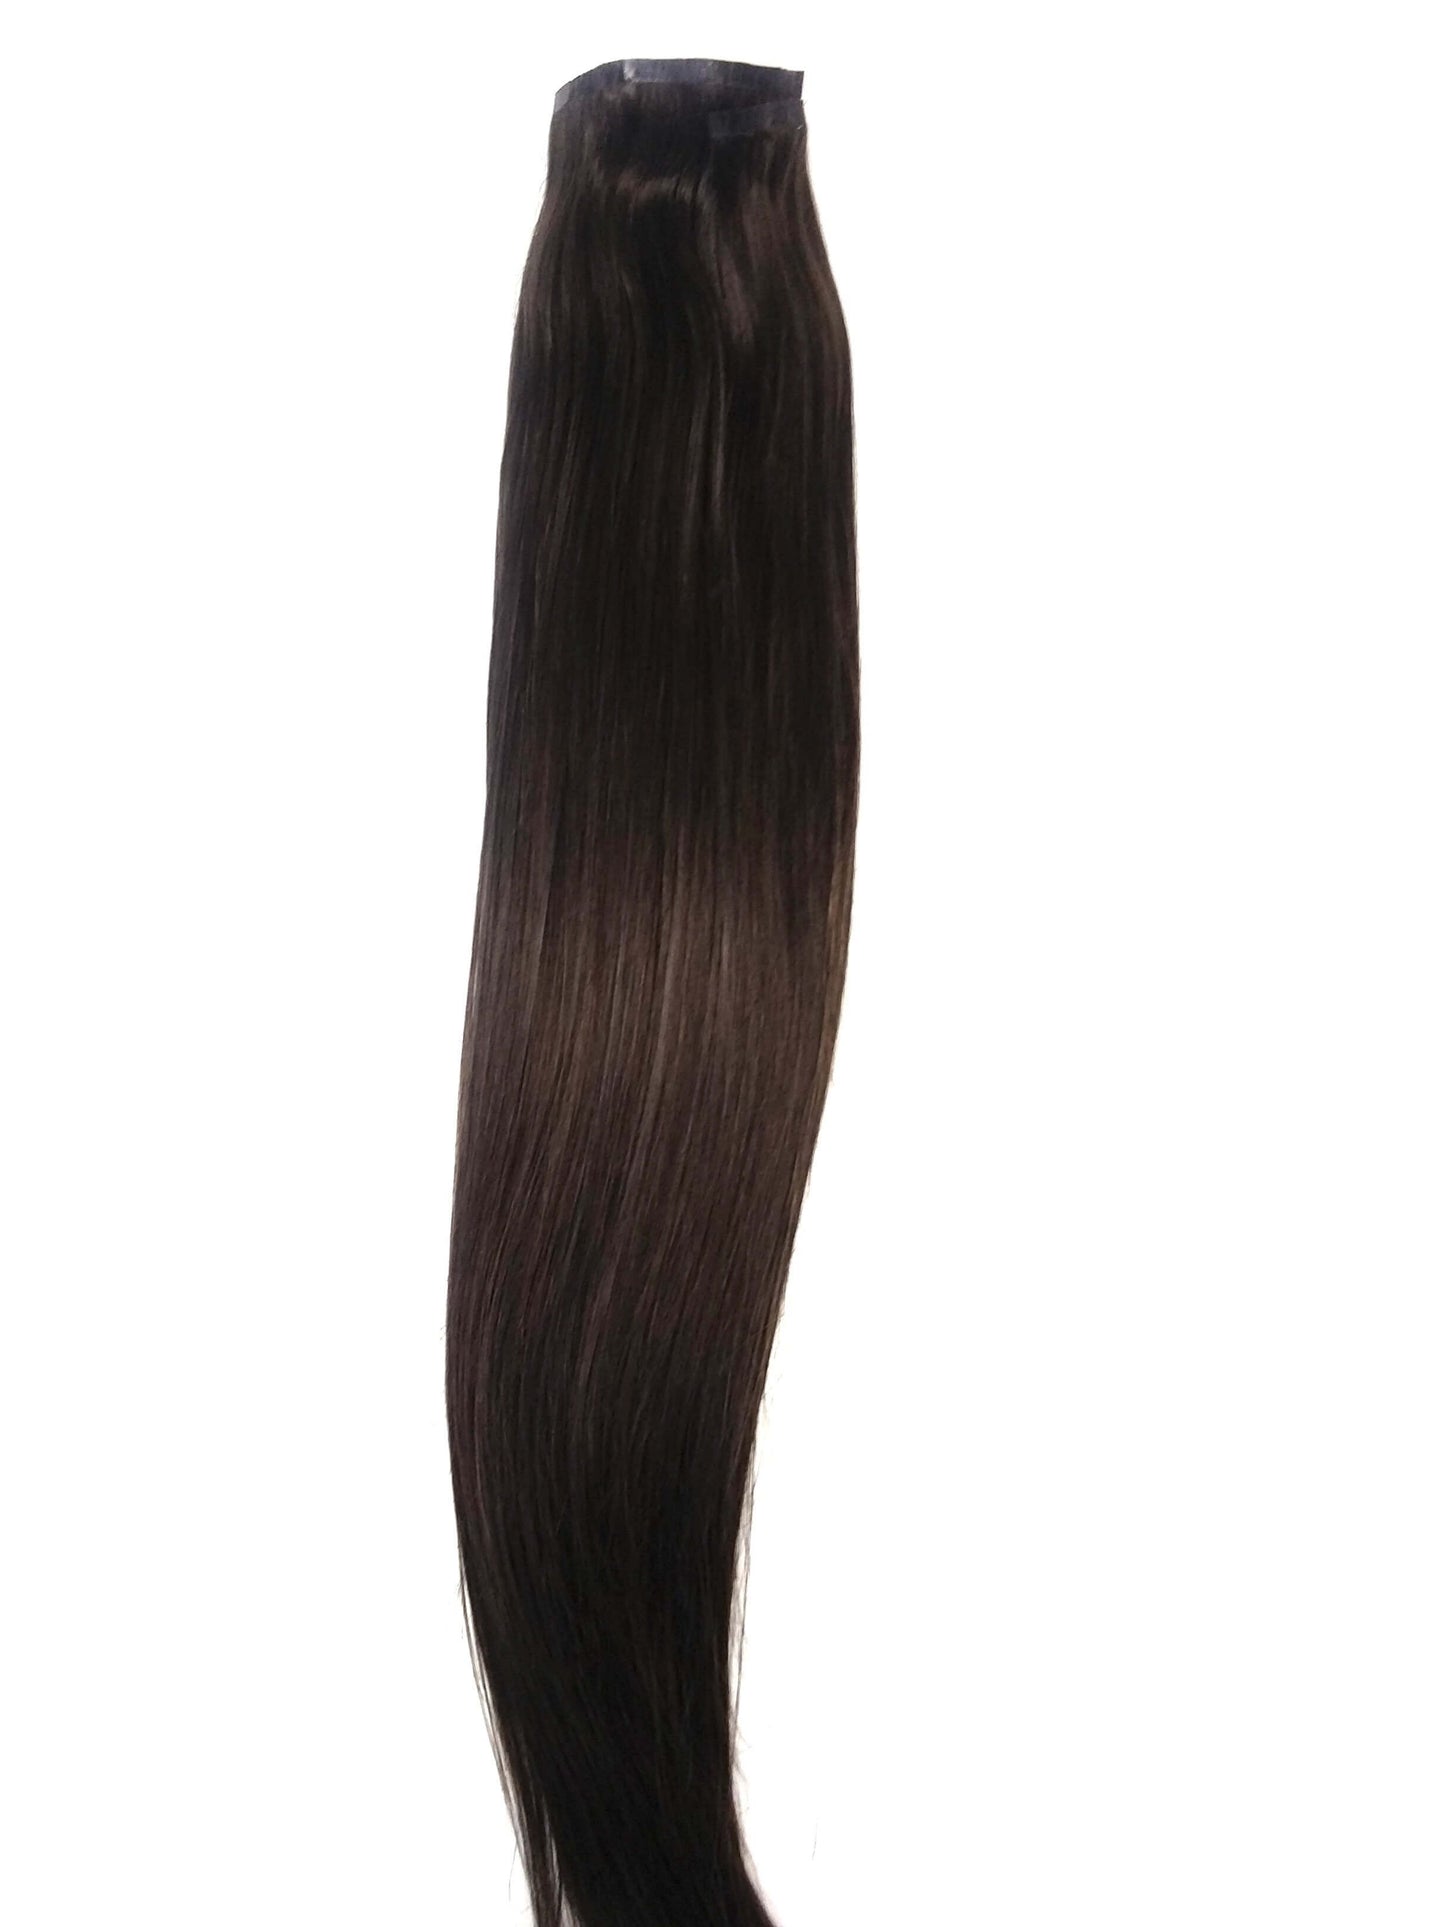 שיער אנושי רמי בתולה ברזילאי - קליפס פו בתוספות, 20'', ישר, צבע 2,100 גרם - משלוח מהיר